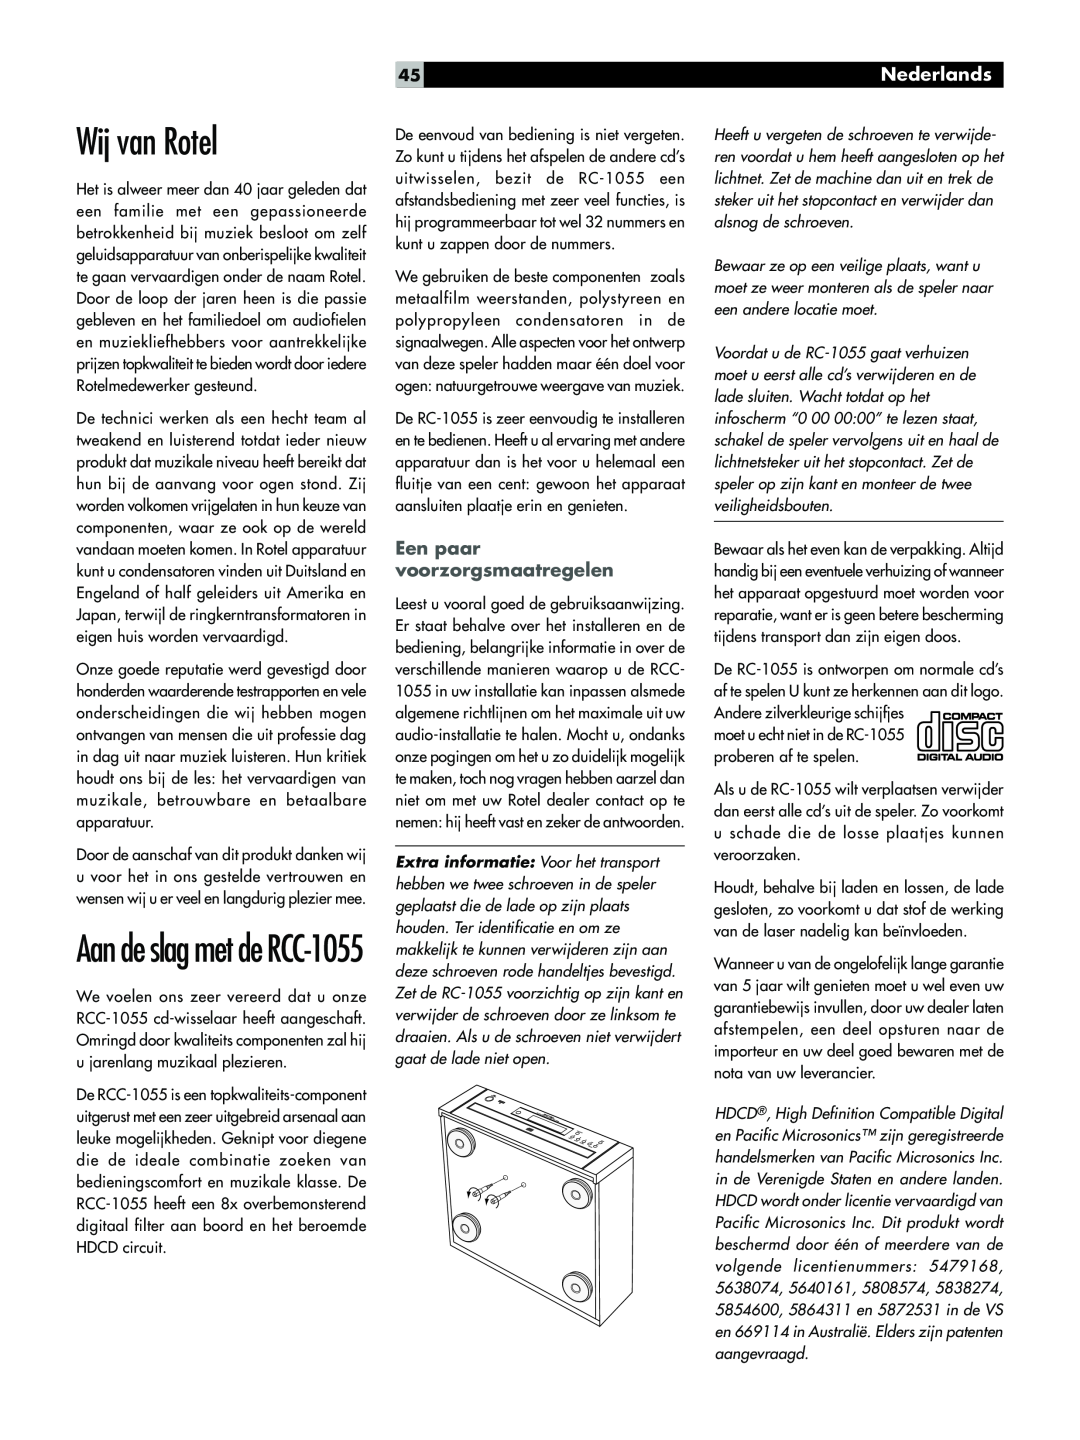 Rotel owner manual Wij van Rotel, Aan de slag met de RCC-1055, Nederlands, Een paar voorzorgsmaatregelen 